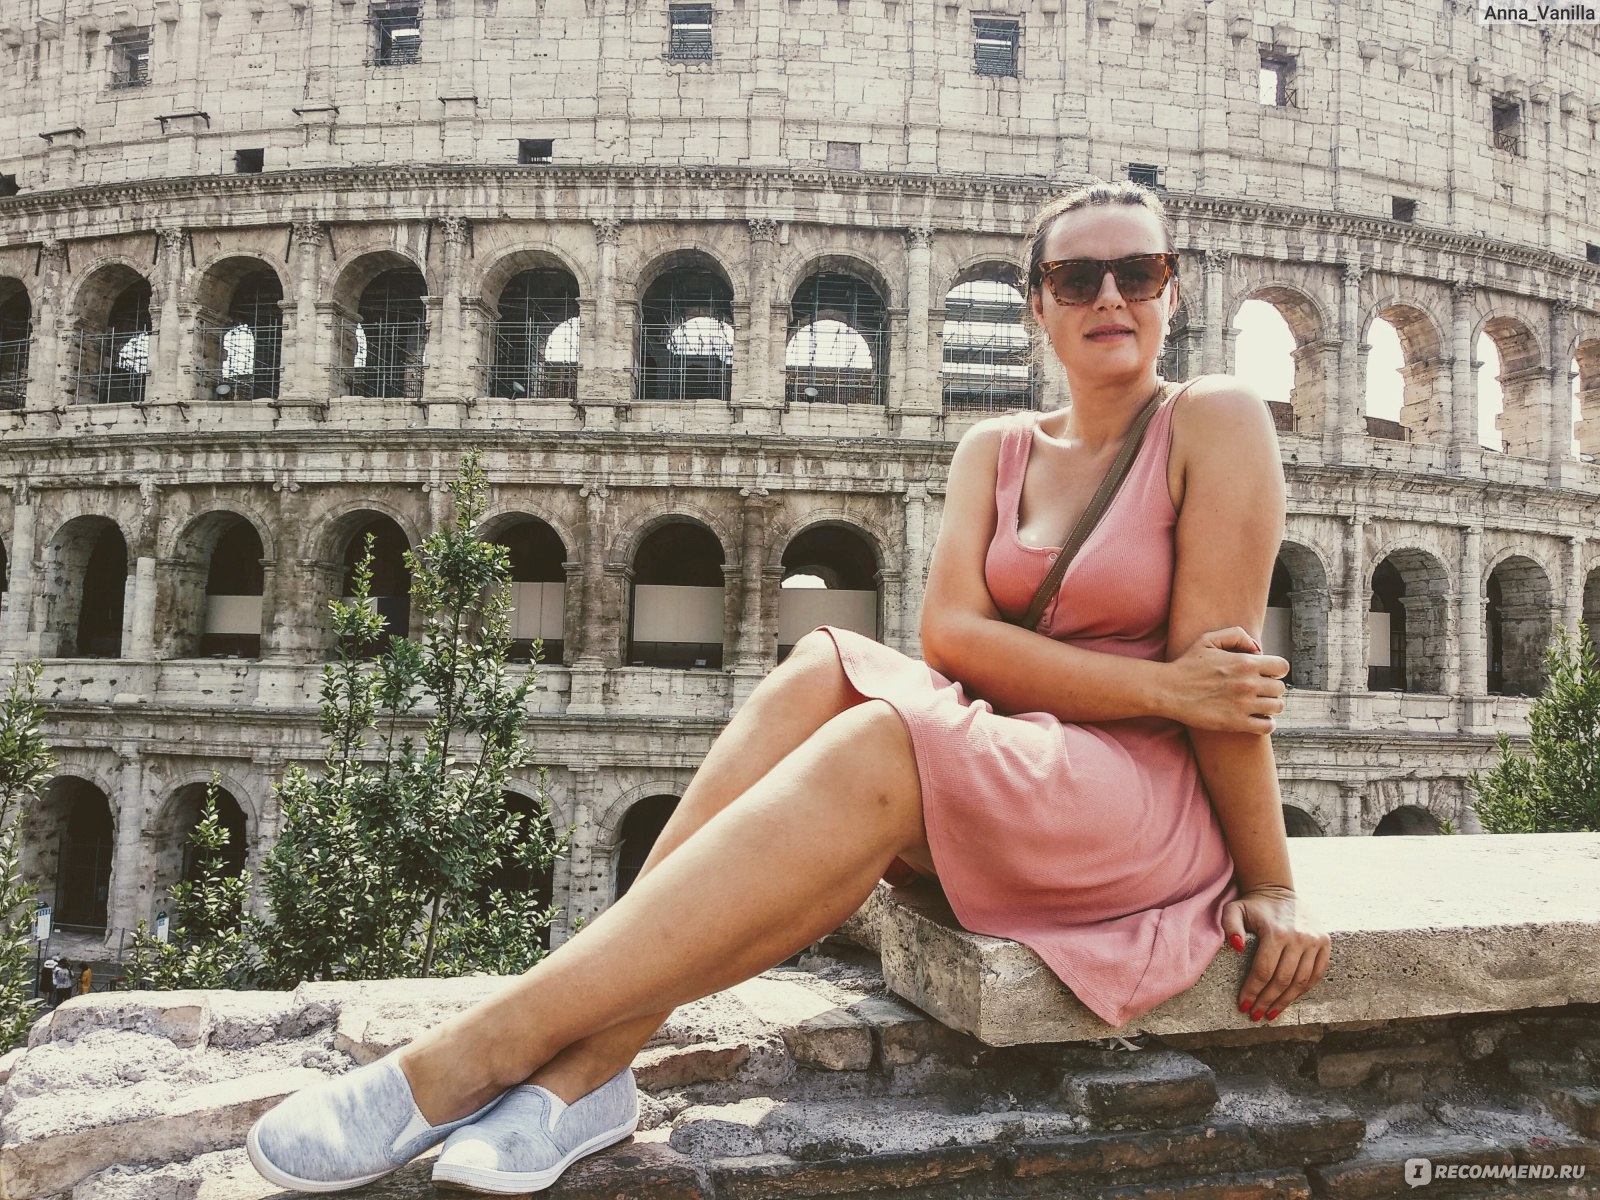 Поездка в Рим: советы туристам перед путешествием